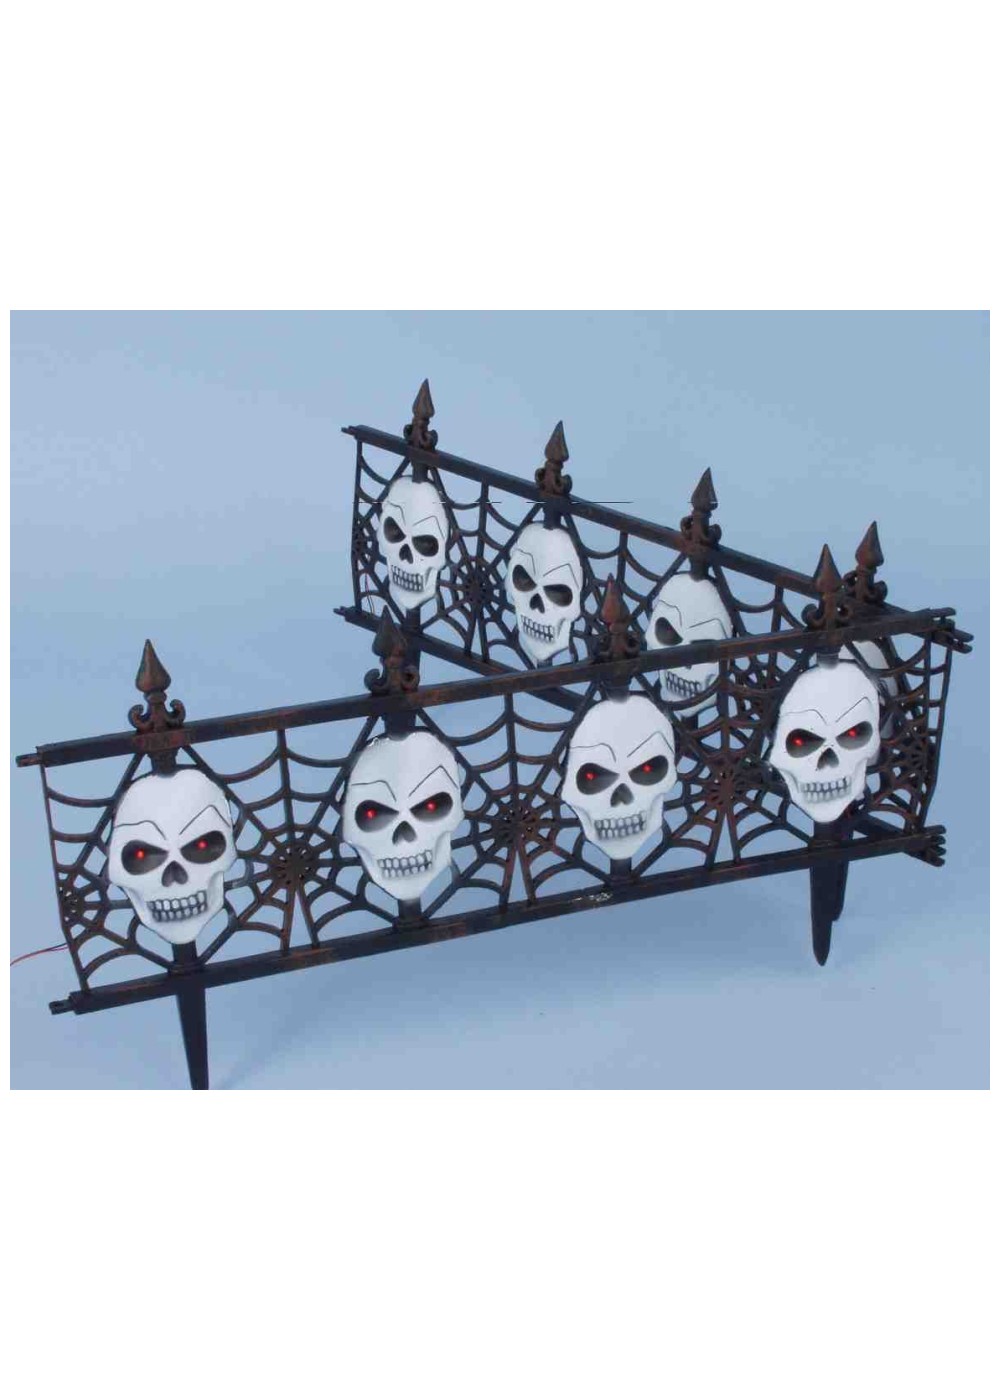 Gothic Skull Fence Decoration